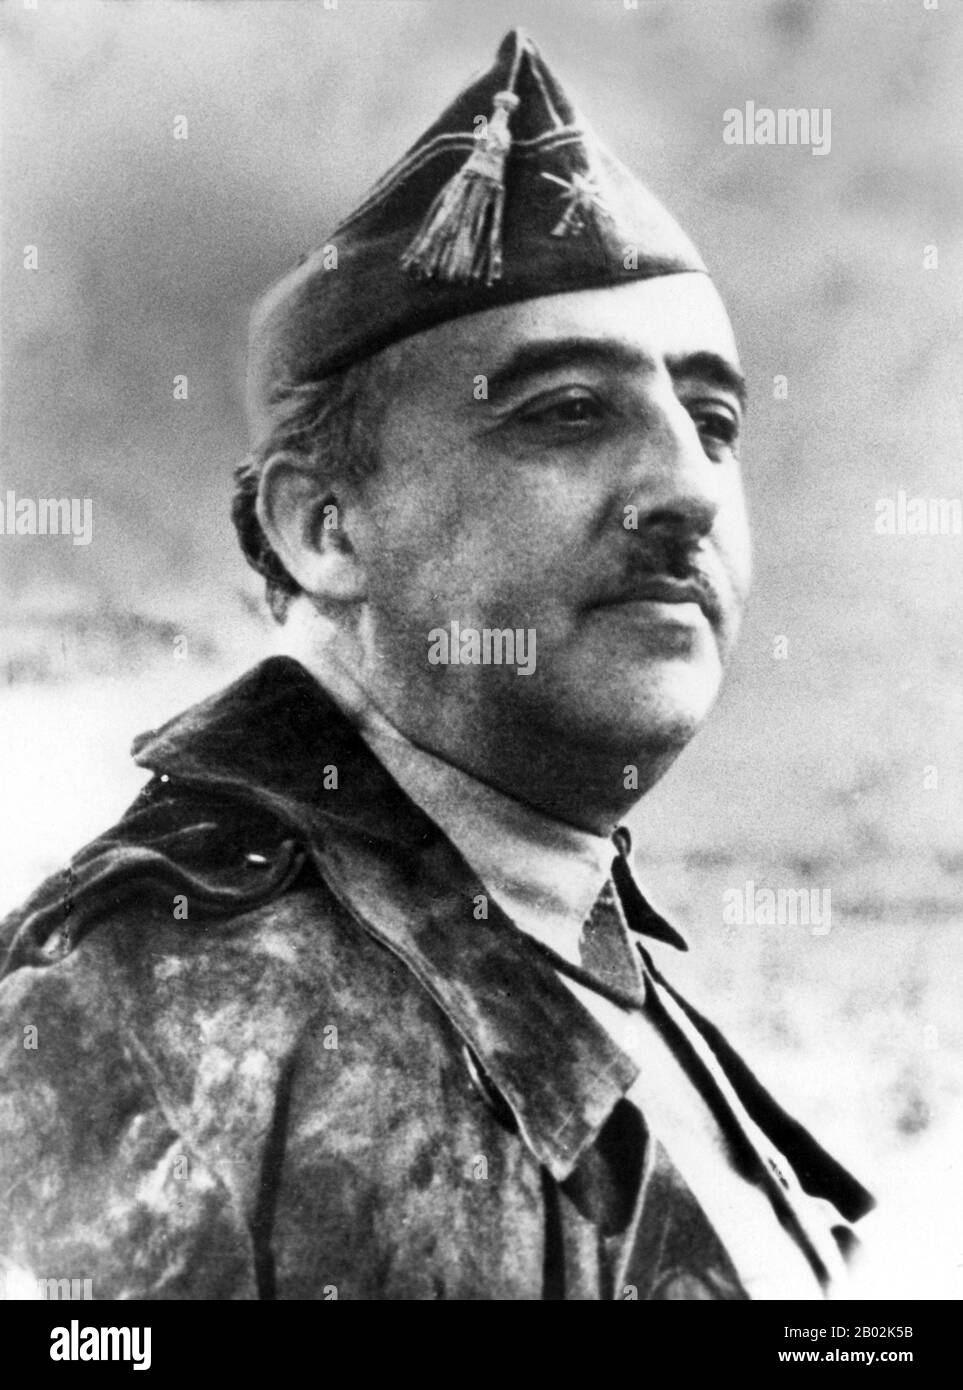 Francisco Franco Bahamonde (4 décembre 1892 – 20 novembre 1975) fut le dictateur de l'Espagne de 1939 à sa mort en 1975. Conservateur, il fut choqué quand la monarchie fut enlevée et remplacée par une république démocratique en 1931. Avec les élections de 1936, les conservateurs sont tombés et le Front Populaire de gauche est arrivé au pouvoir. Cherchant à renverser la république, Franco et d'autres généraux ont mis en place un coup d'État partiellement réussi, qui a commencé la guerre civile espagnole. Avec la mort des autres généraux, Franco est rapidement devenu le seul chef de sa faction. Franco a reçu le soutien militaire du fasciste local, Banque D'Images